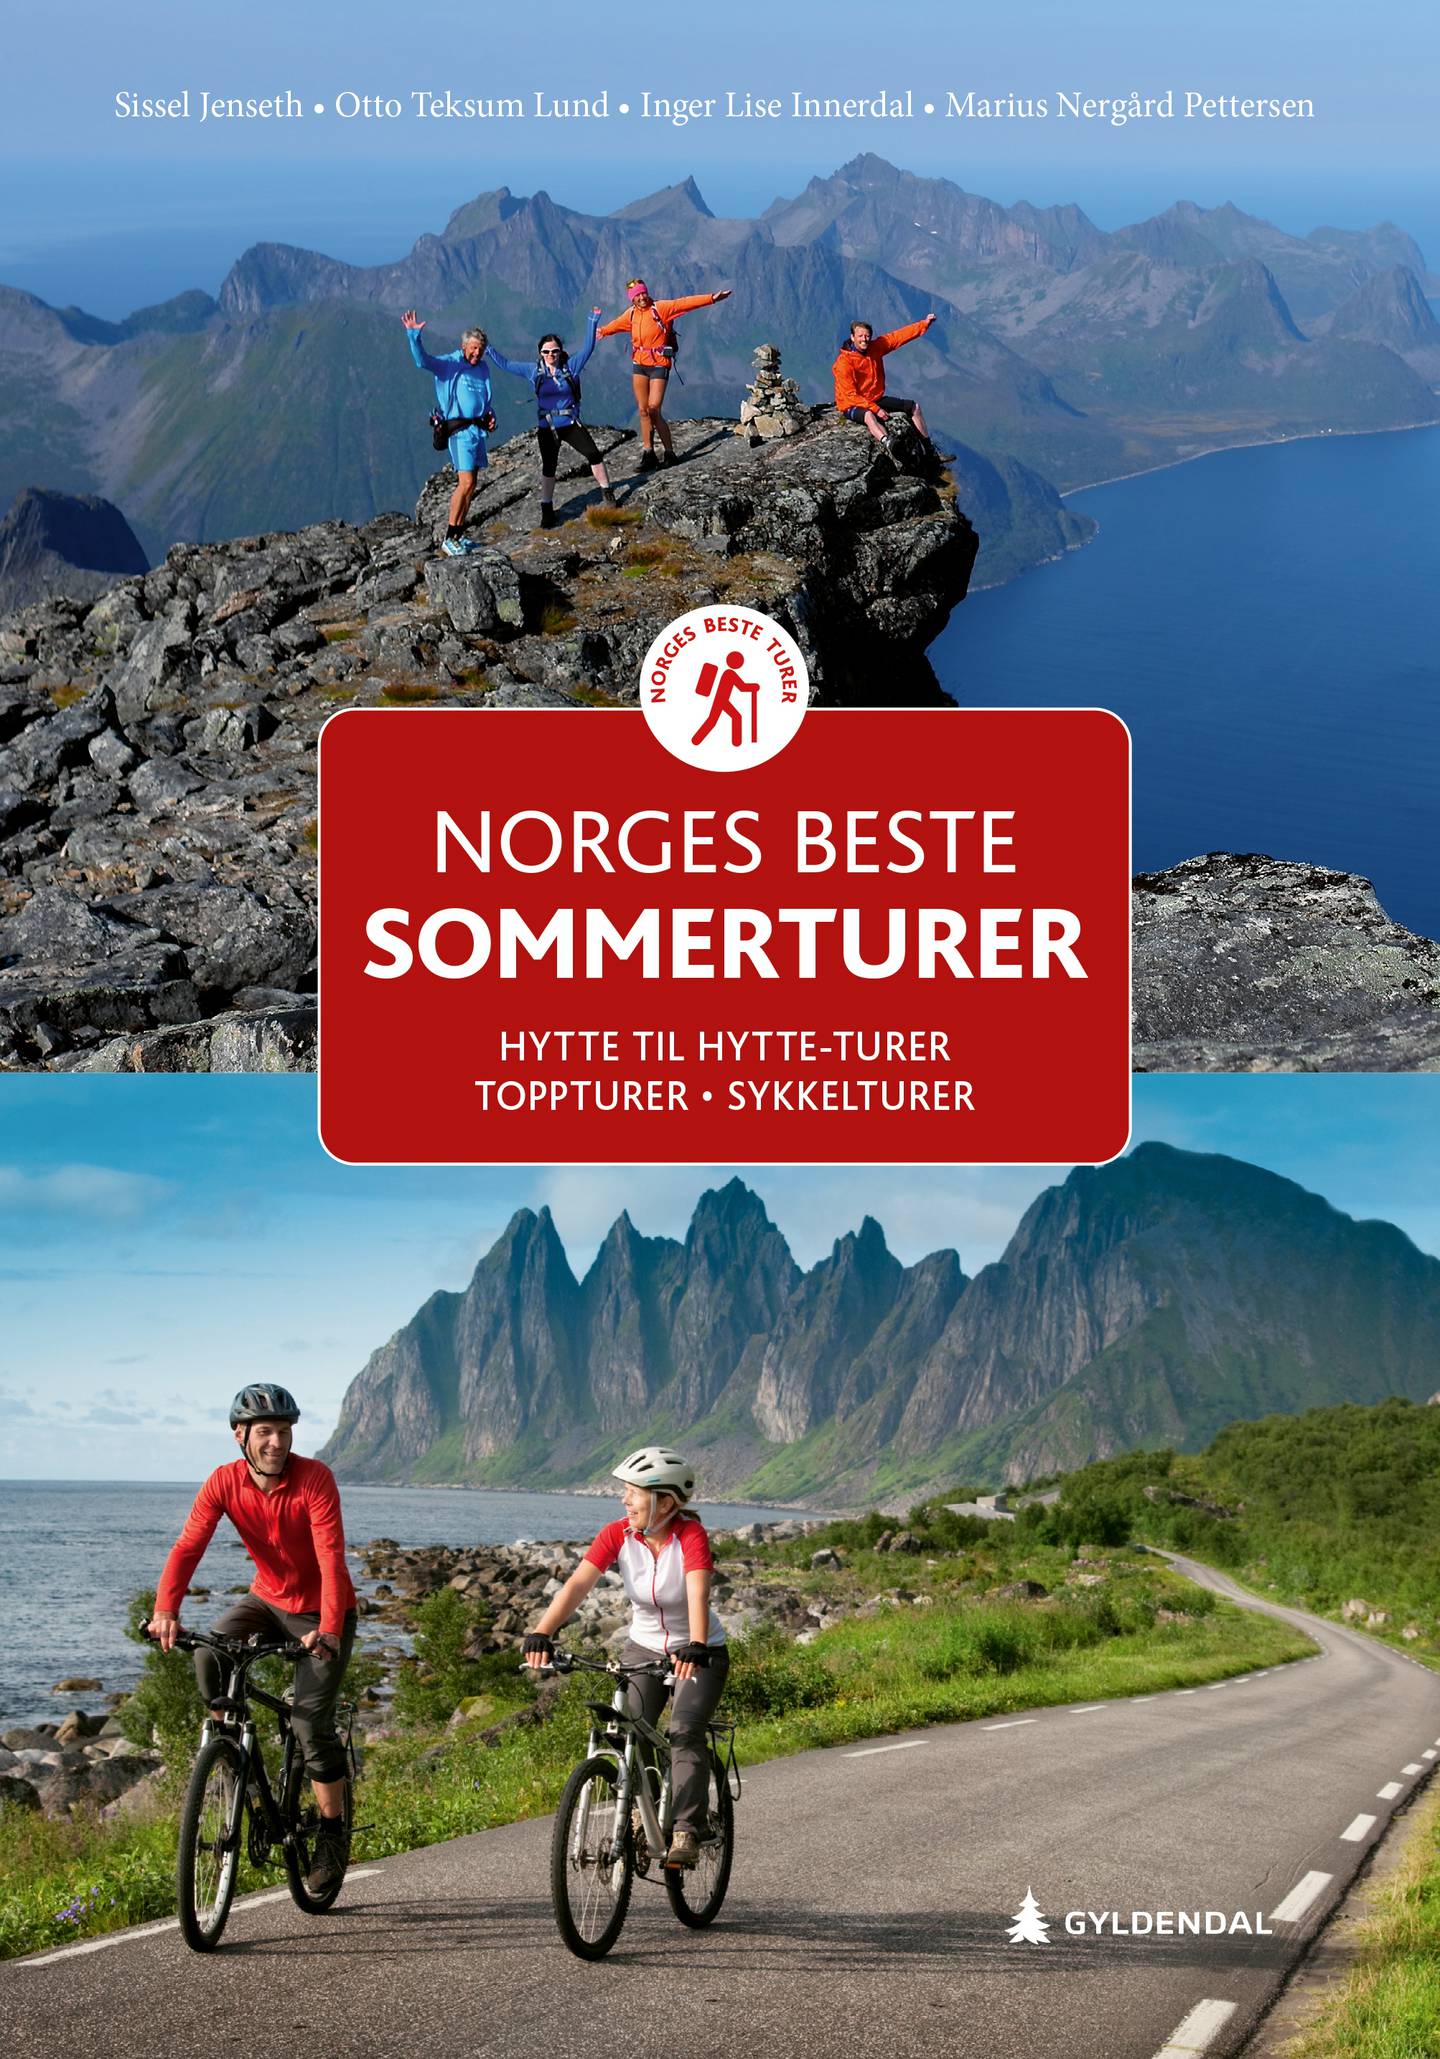 Norges beste sommerturer: hytte til hytte, topptur, sykkeltur